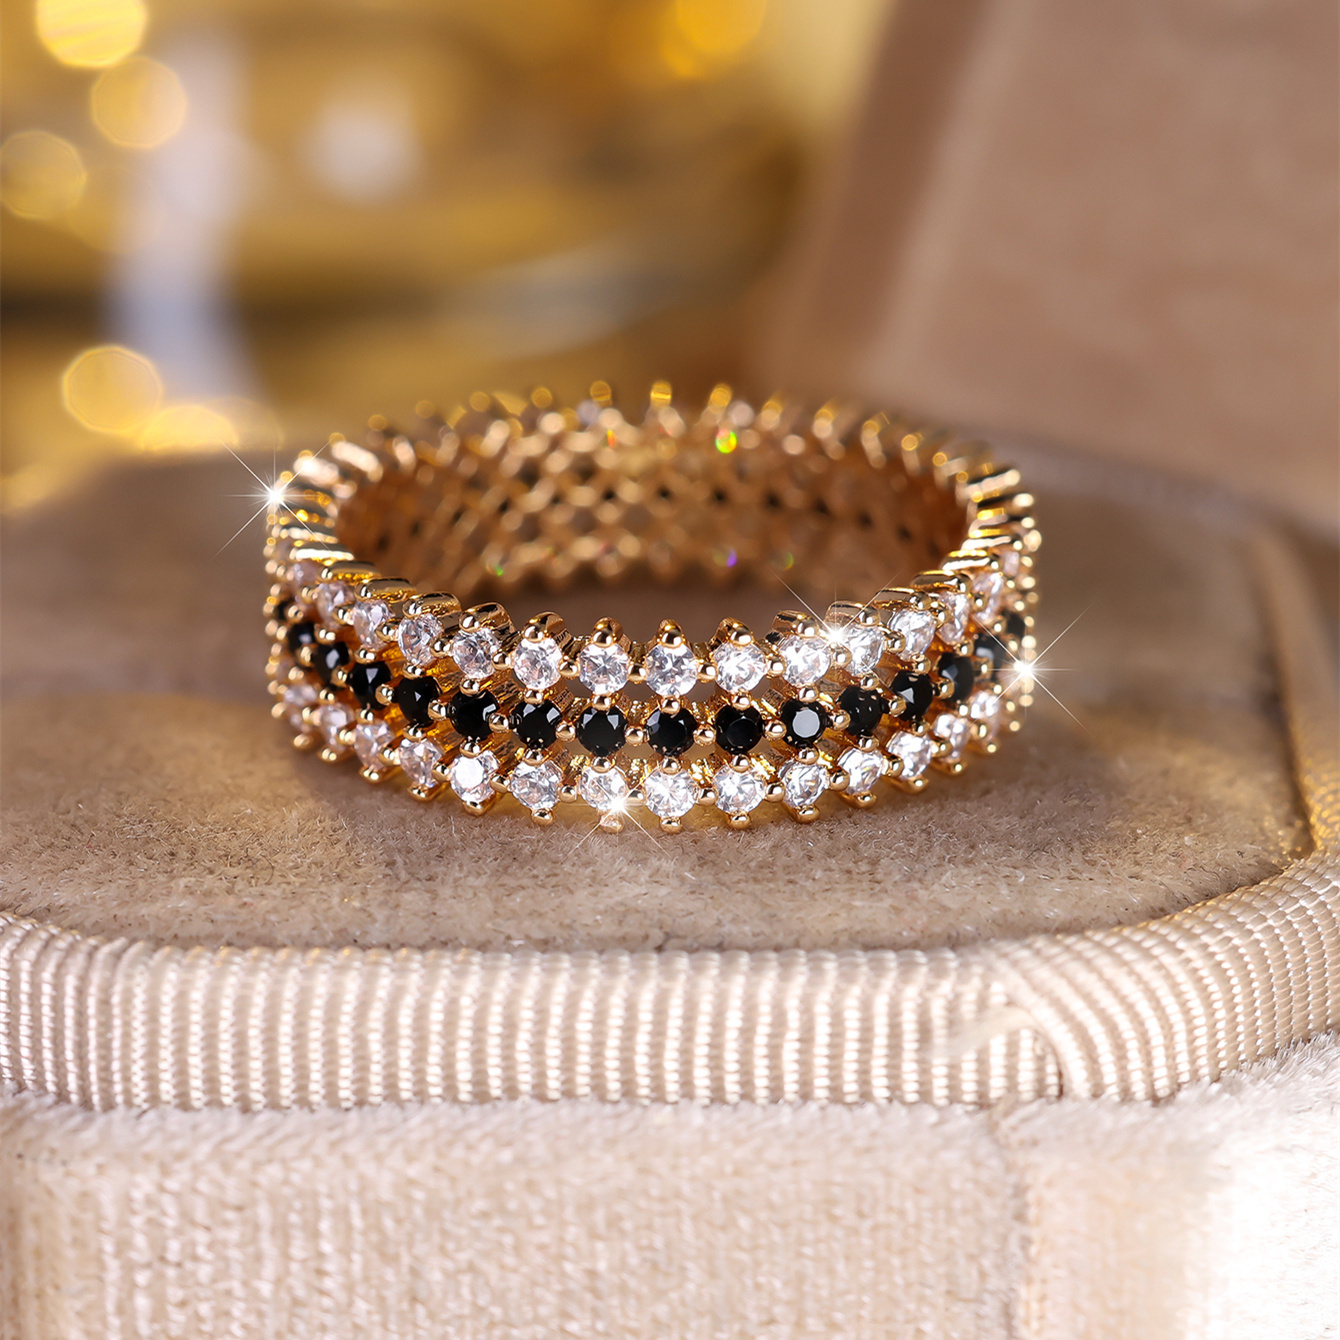 

Stylish Band Ring Paved Full Of Shining Zirconia Engagement/ Wedding Ring Evening Party Decor Dupes Luxury Jewelry